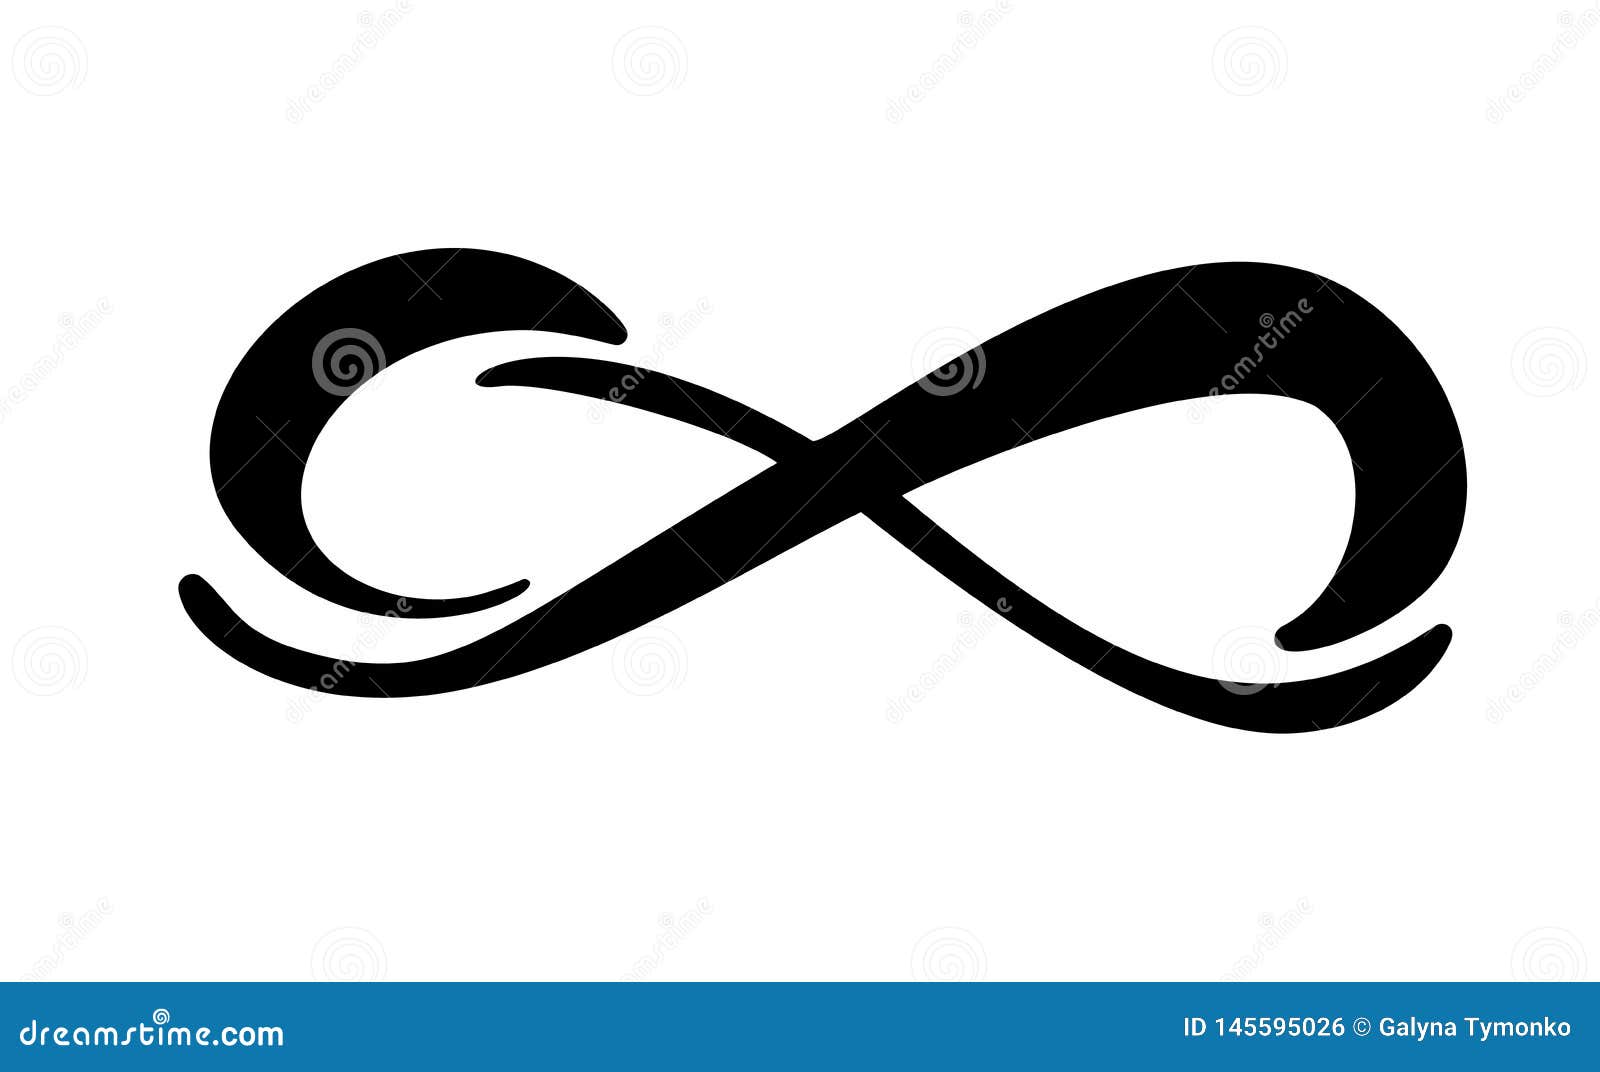 Infinity calligraphie vectoriel illustration symbole. Emblème